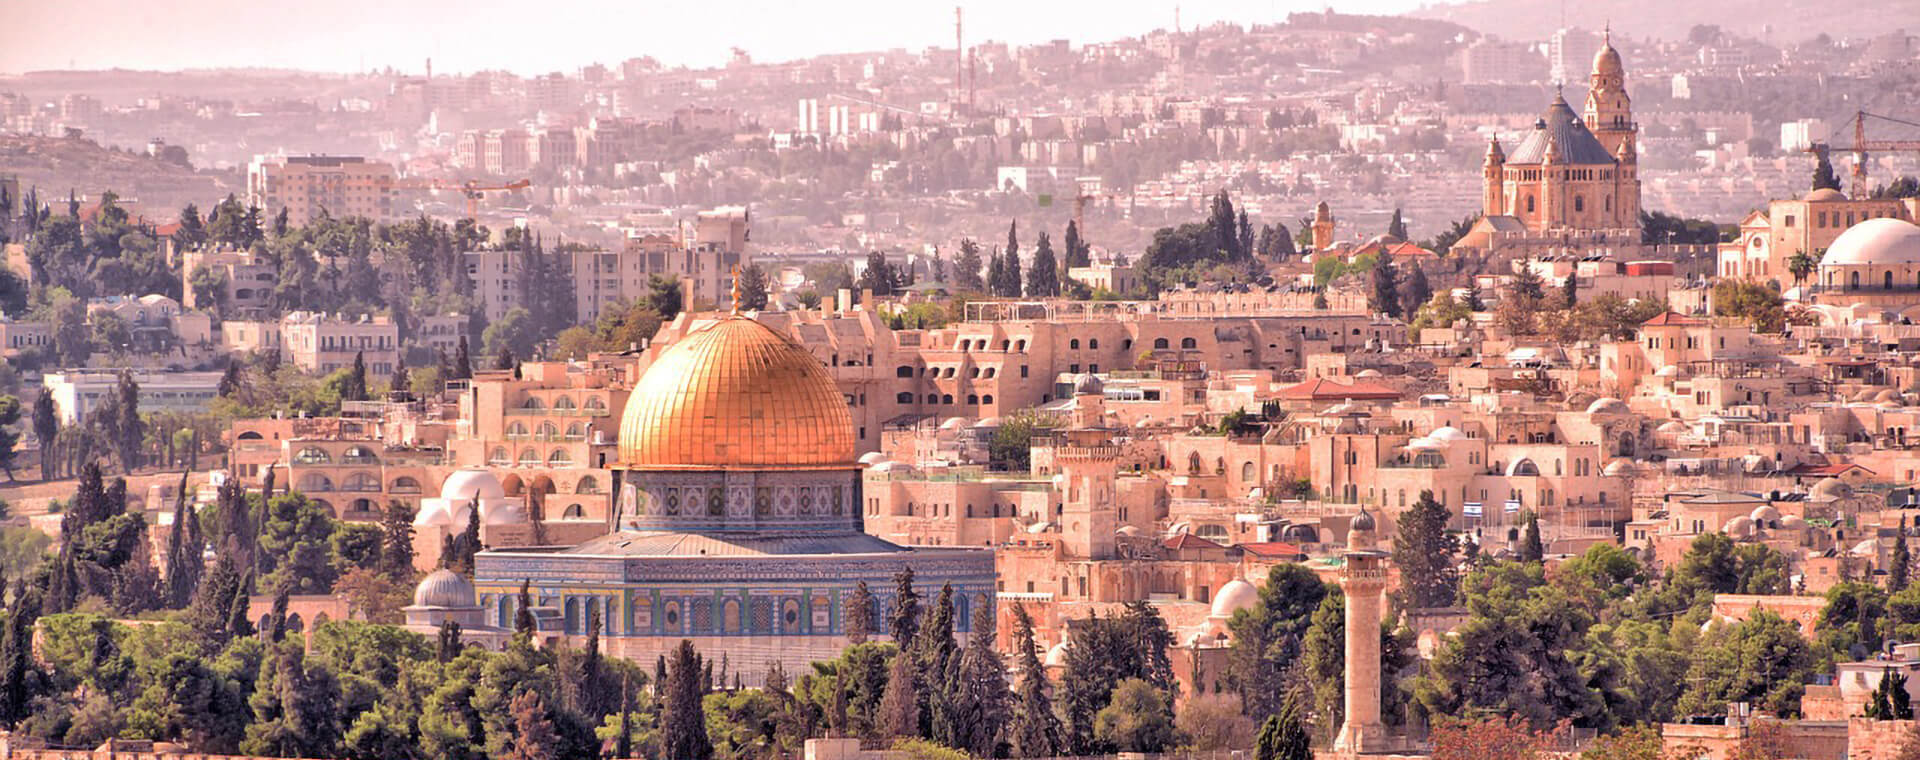 Иерусалим из Шарм эль Шейха на один день